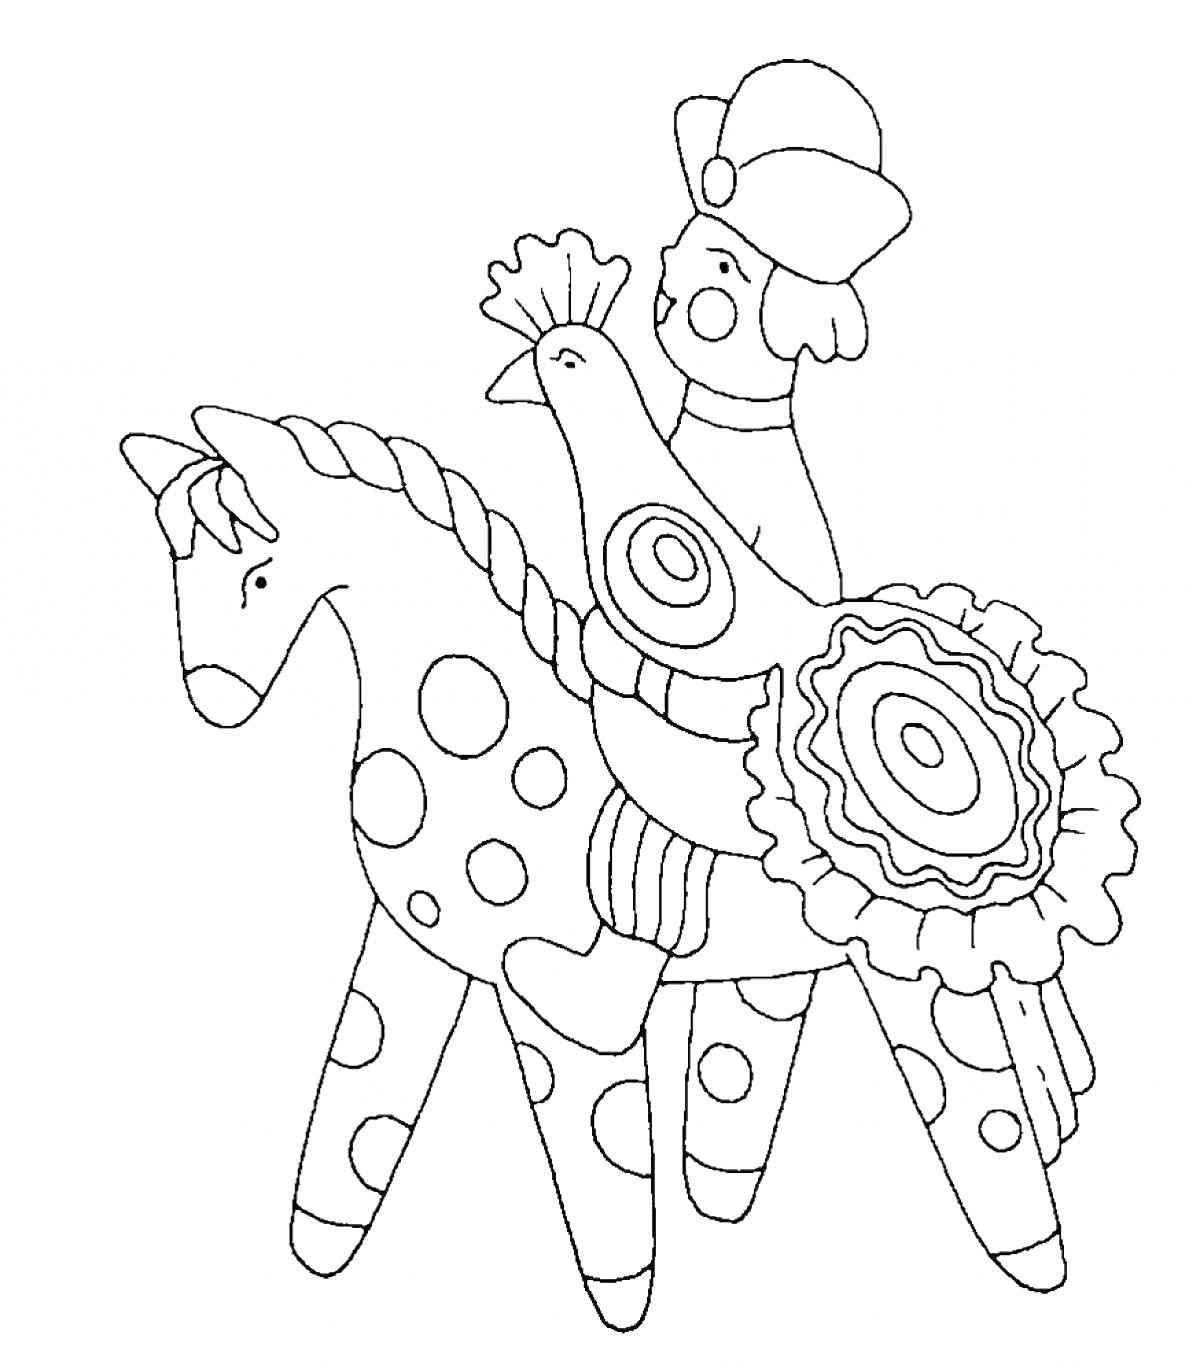 Человек на лошади с петухом в дымковском стиле